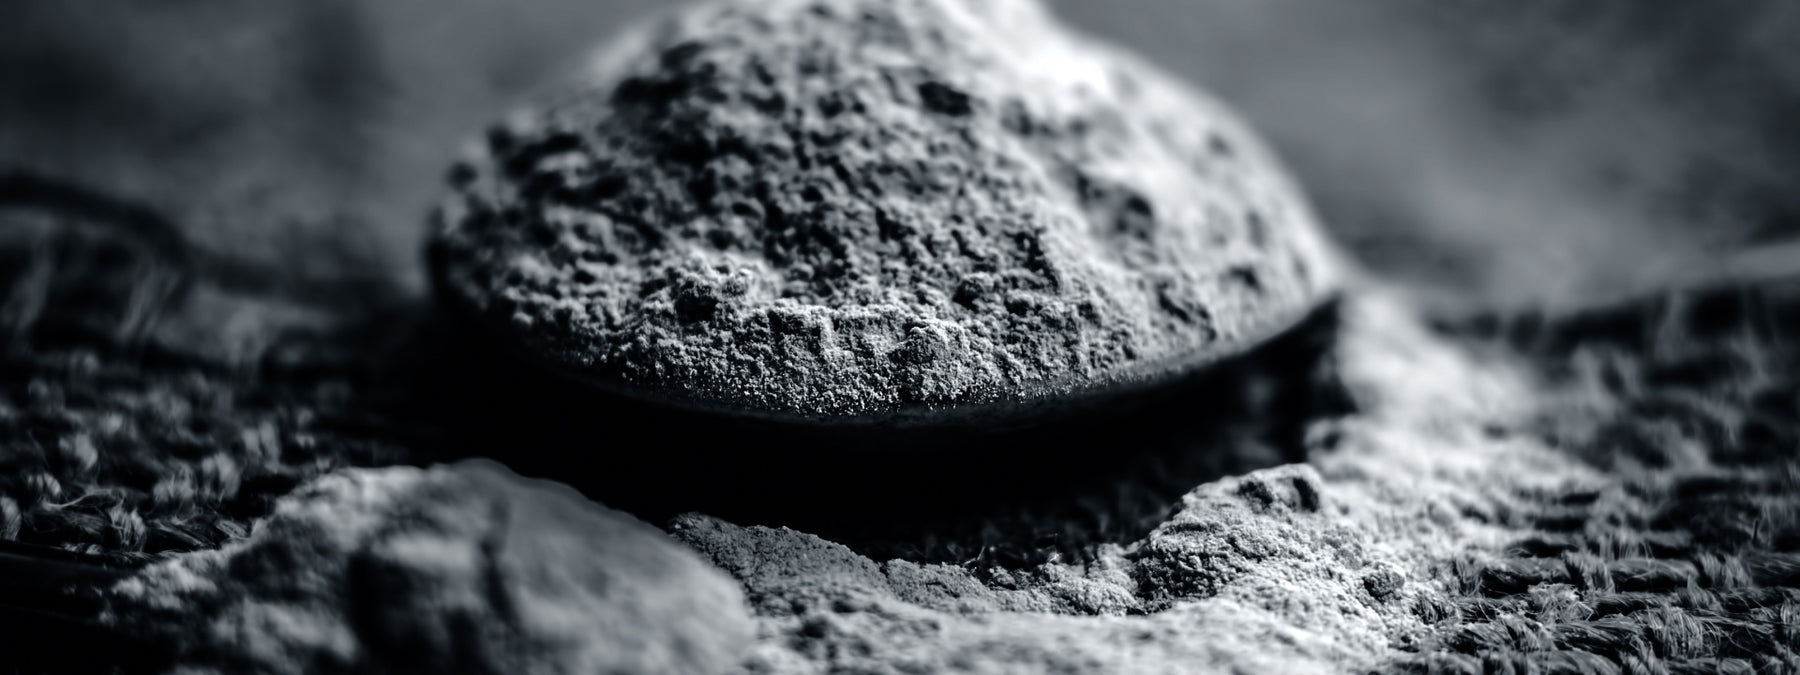 Bentonite Clay - History, Uses, and Benefits